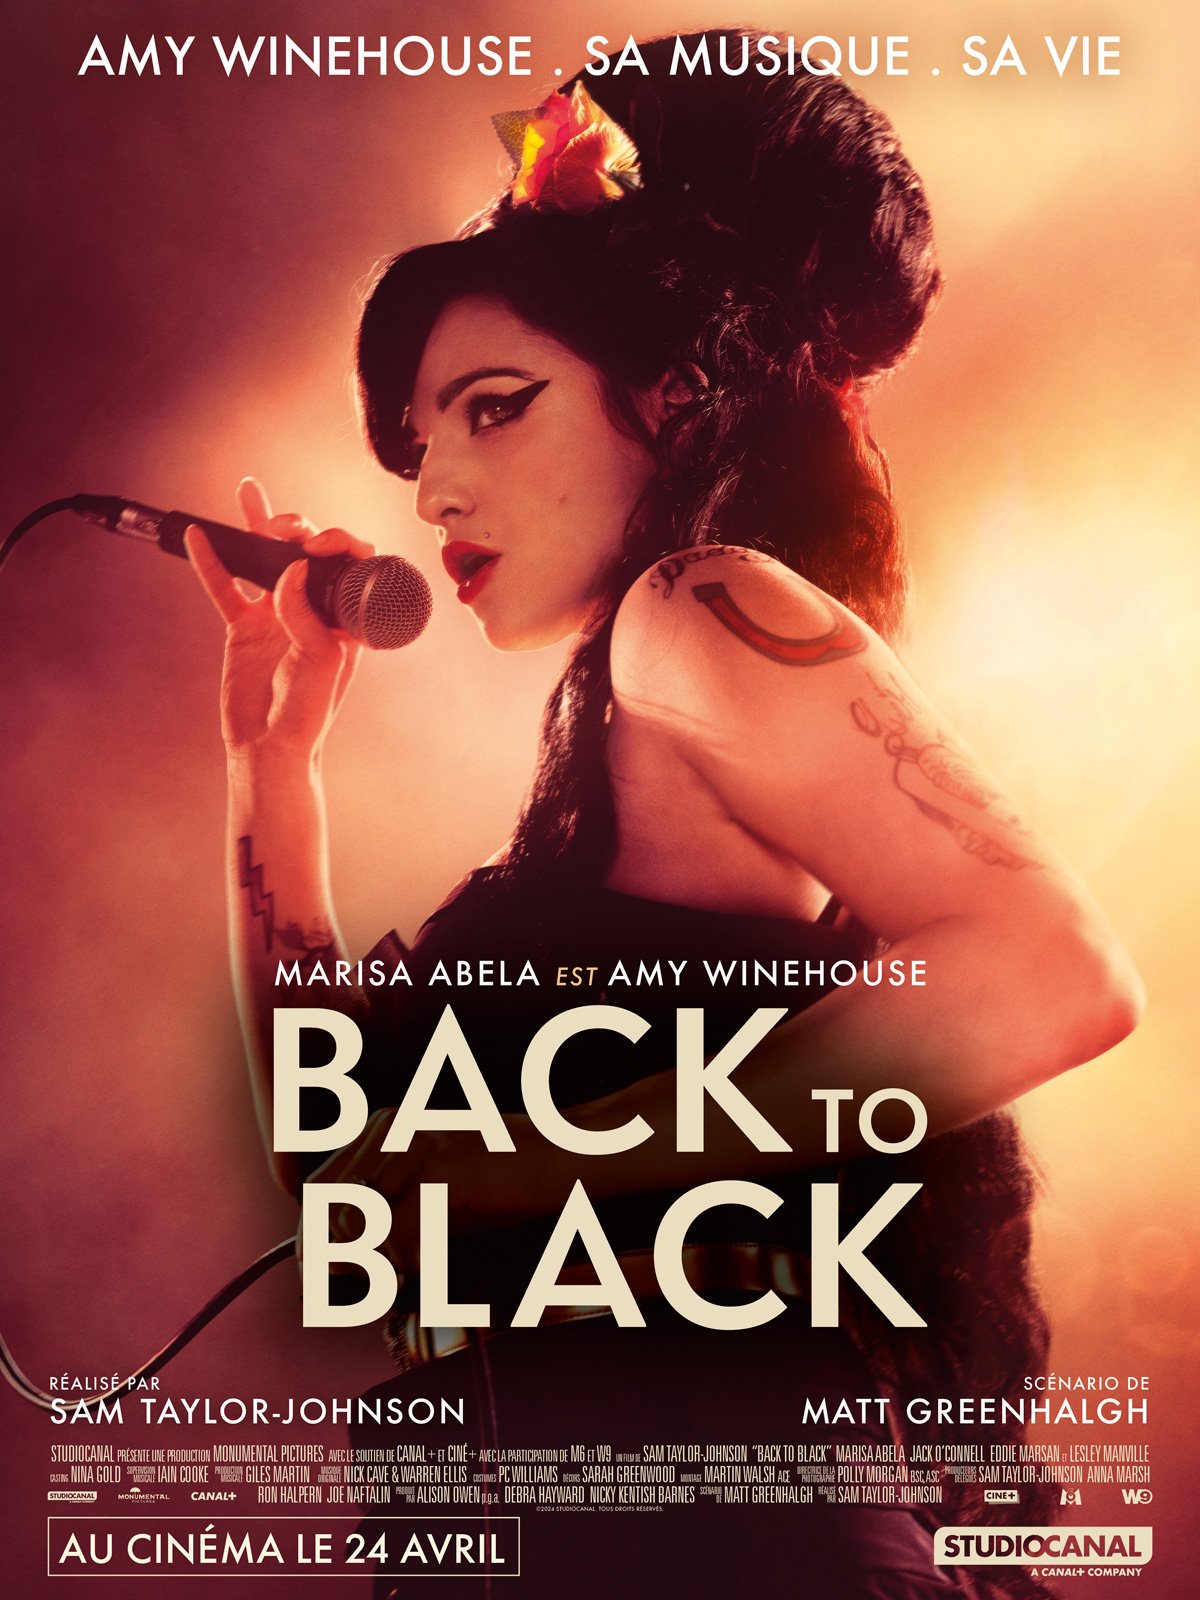 Back to Black retrace la vie et la musique d'Amy Winehouse, à travers la création de l'un des albums les plus iconiques de notre temps, inspiré par son histoire d’amour passionnée et tourmentée avec Blake Fielder-Civil.